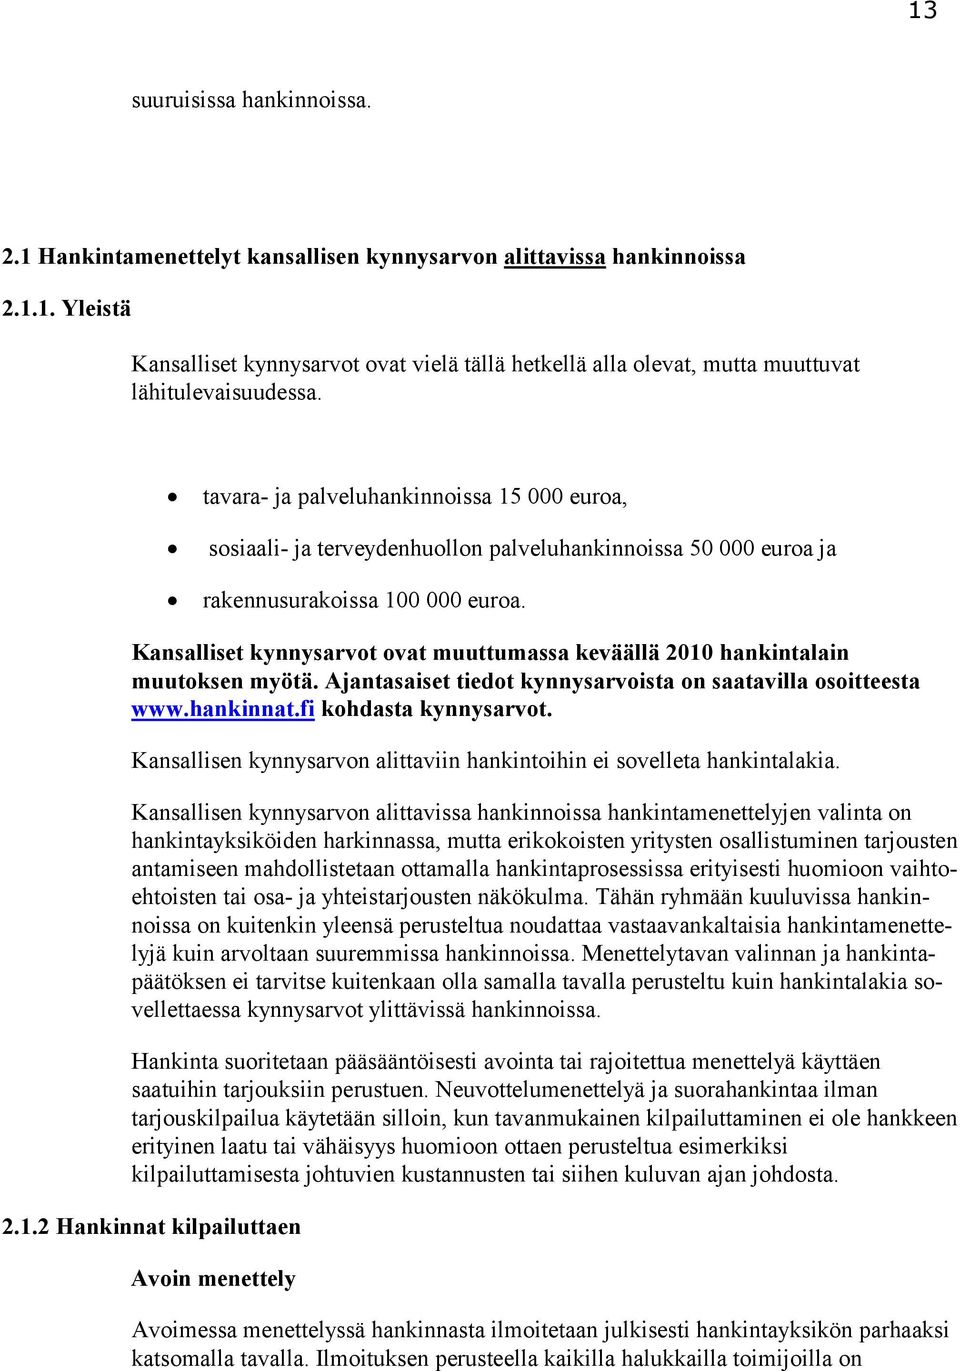 Kansalliset kynnysarvot ovat muuttumassa keväällä 2010 hankintalain muutoksen myötä. Ajantasaiset tiedot kynnysarvoista on saatavilla osoitteesta www.hankinnat.fi kohdasta kynnysarvot.